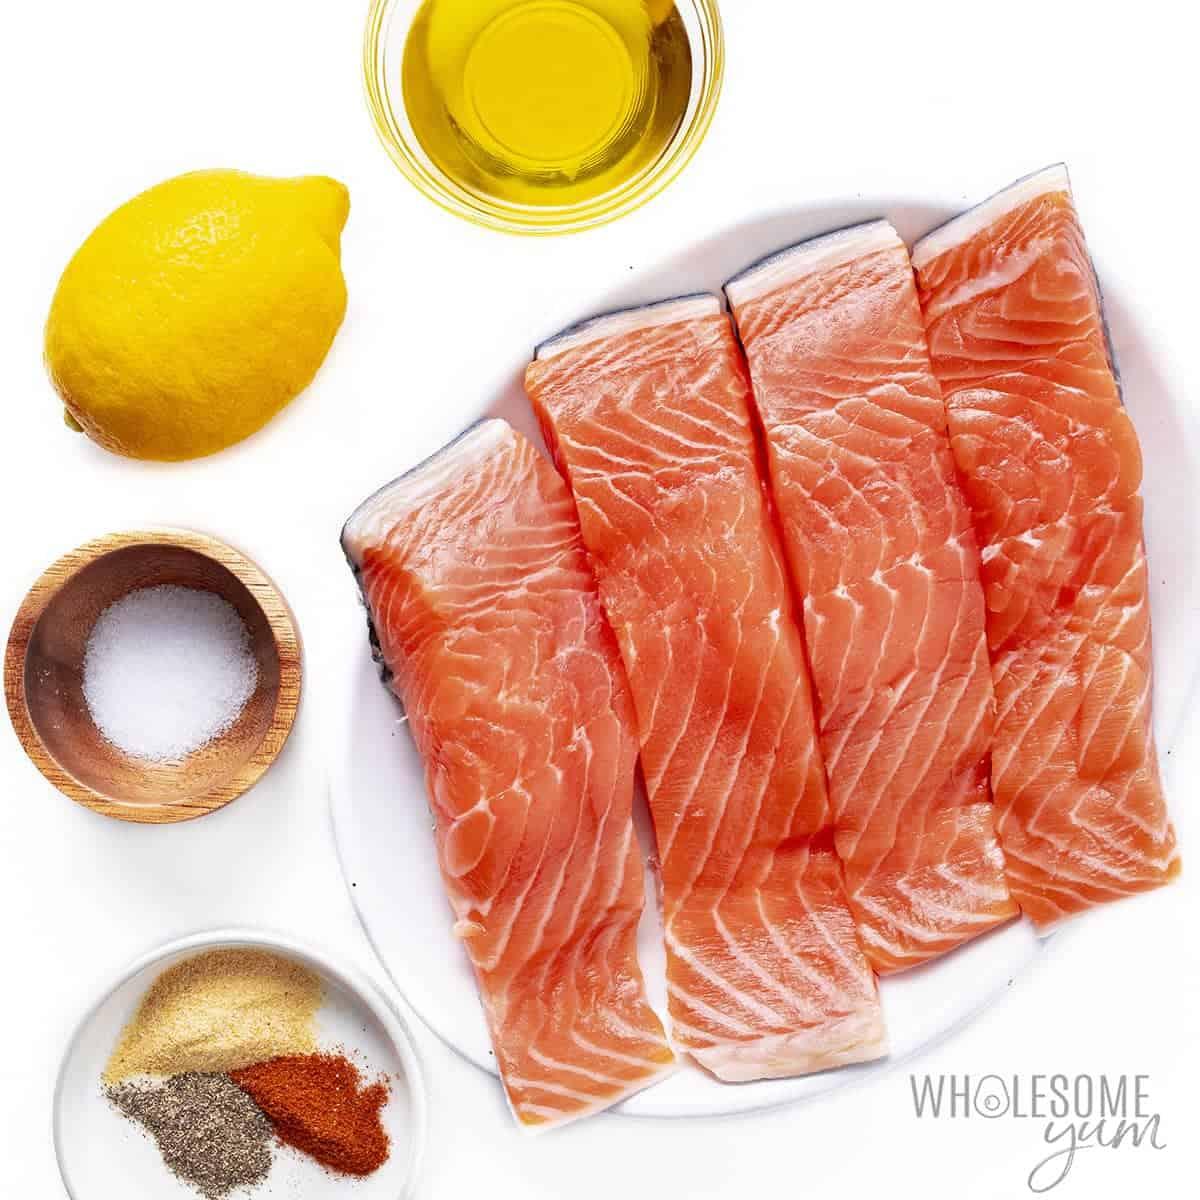 Air fryer salmon ingredients